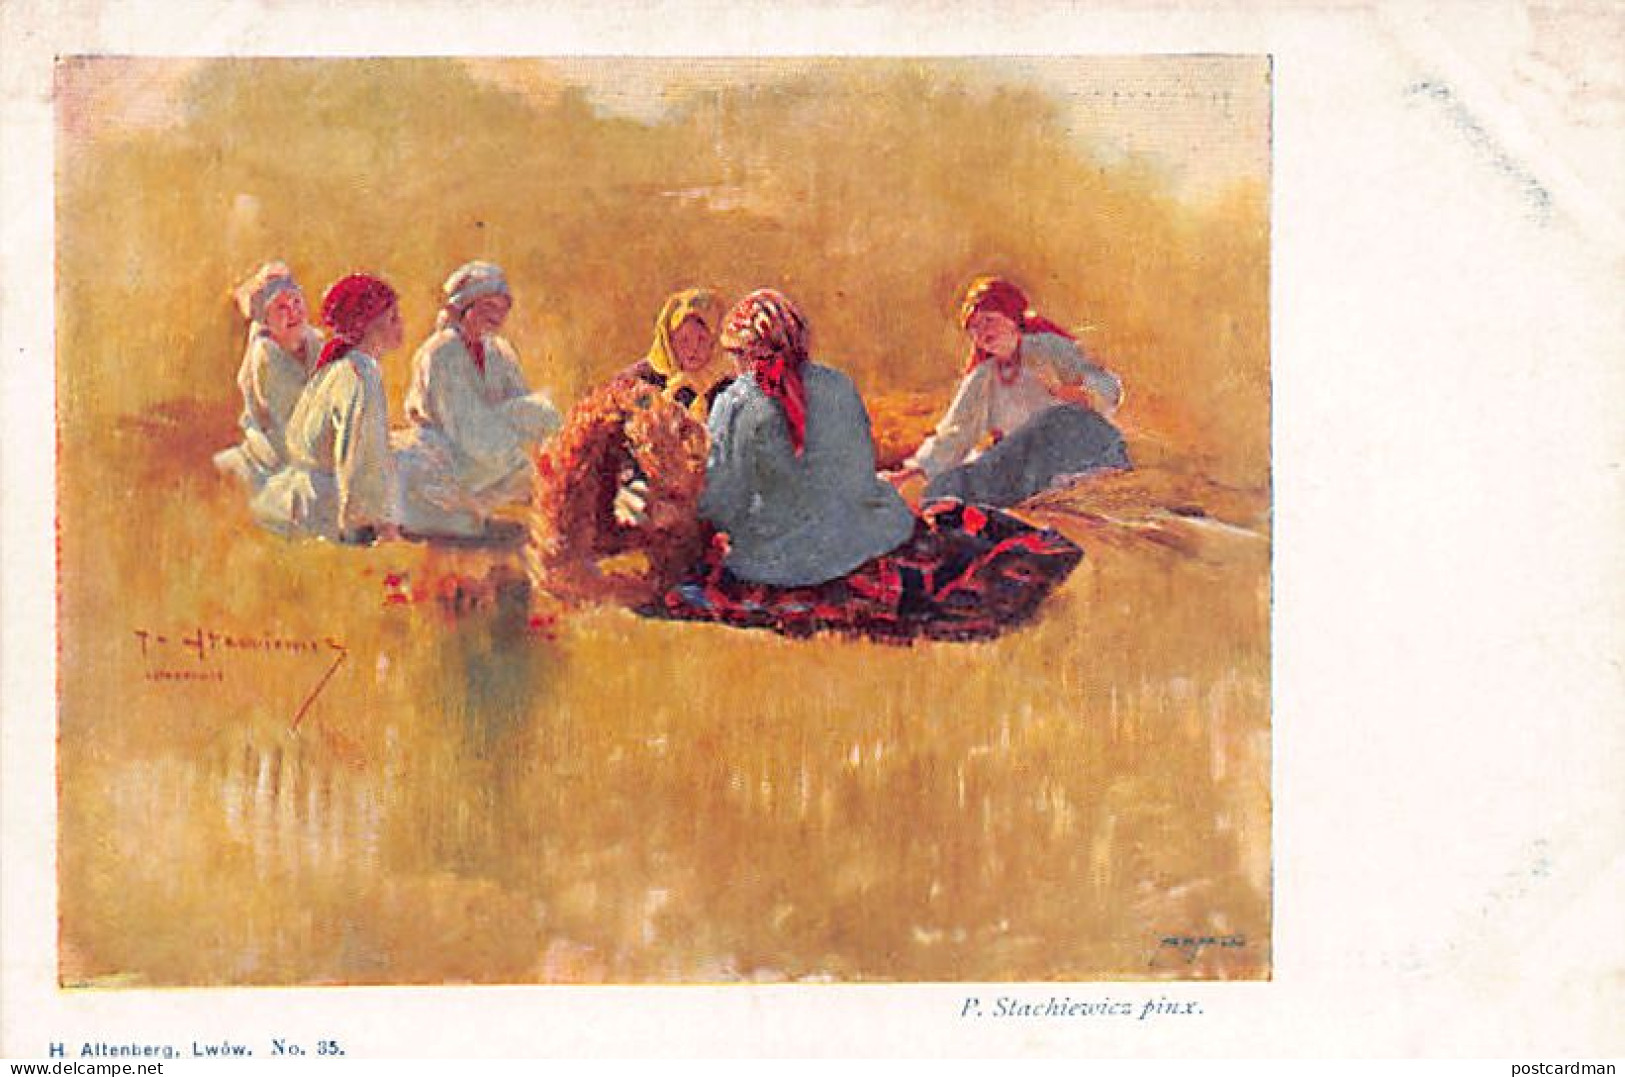 Ukraine - Ukrainian Peasants, Painting By P. Stachiewicz - Publ. H. Altenberg In Lviv 35 - Ukraine